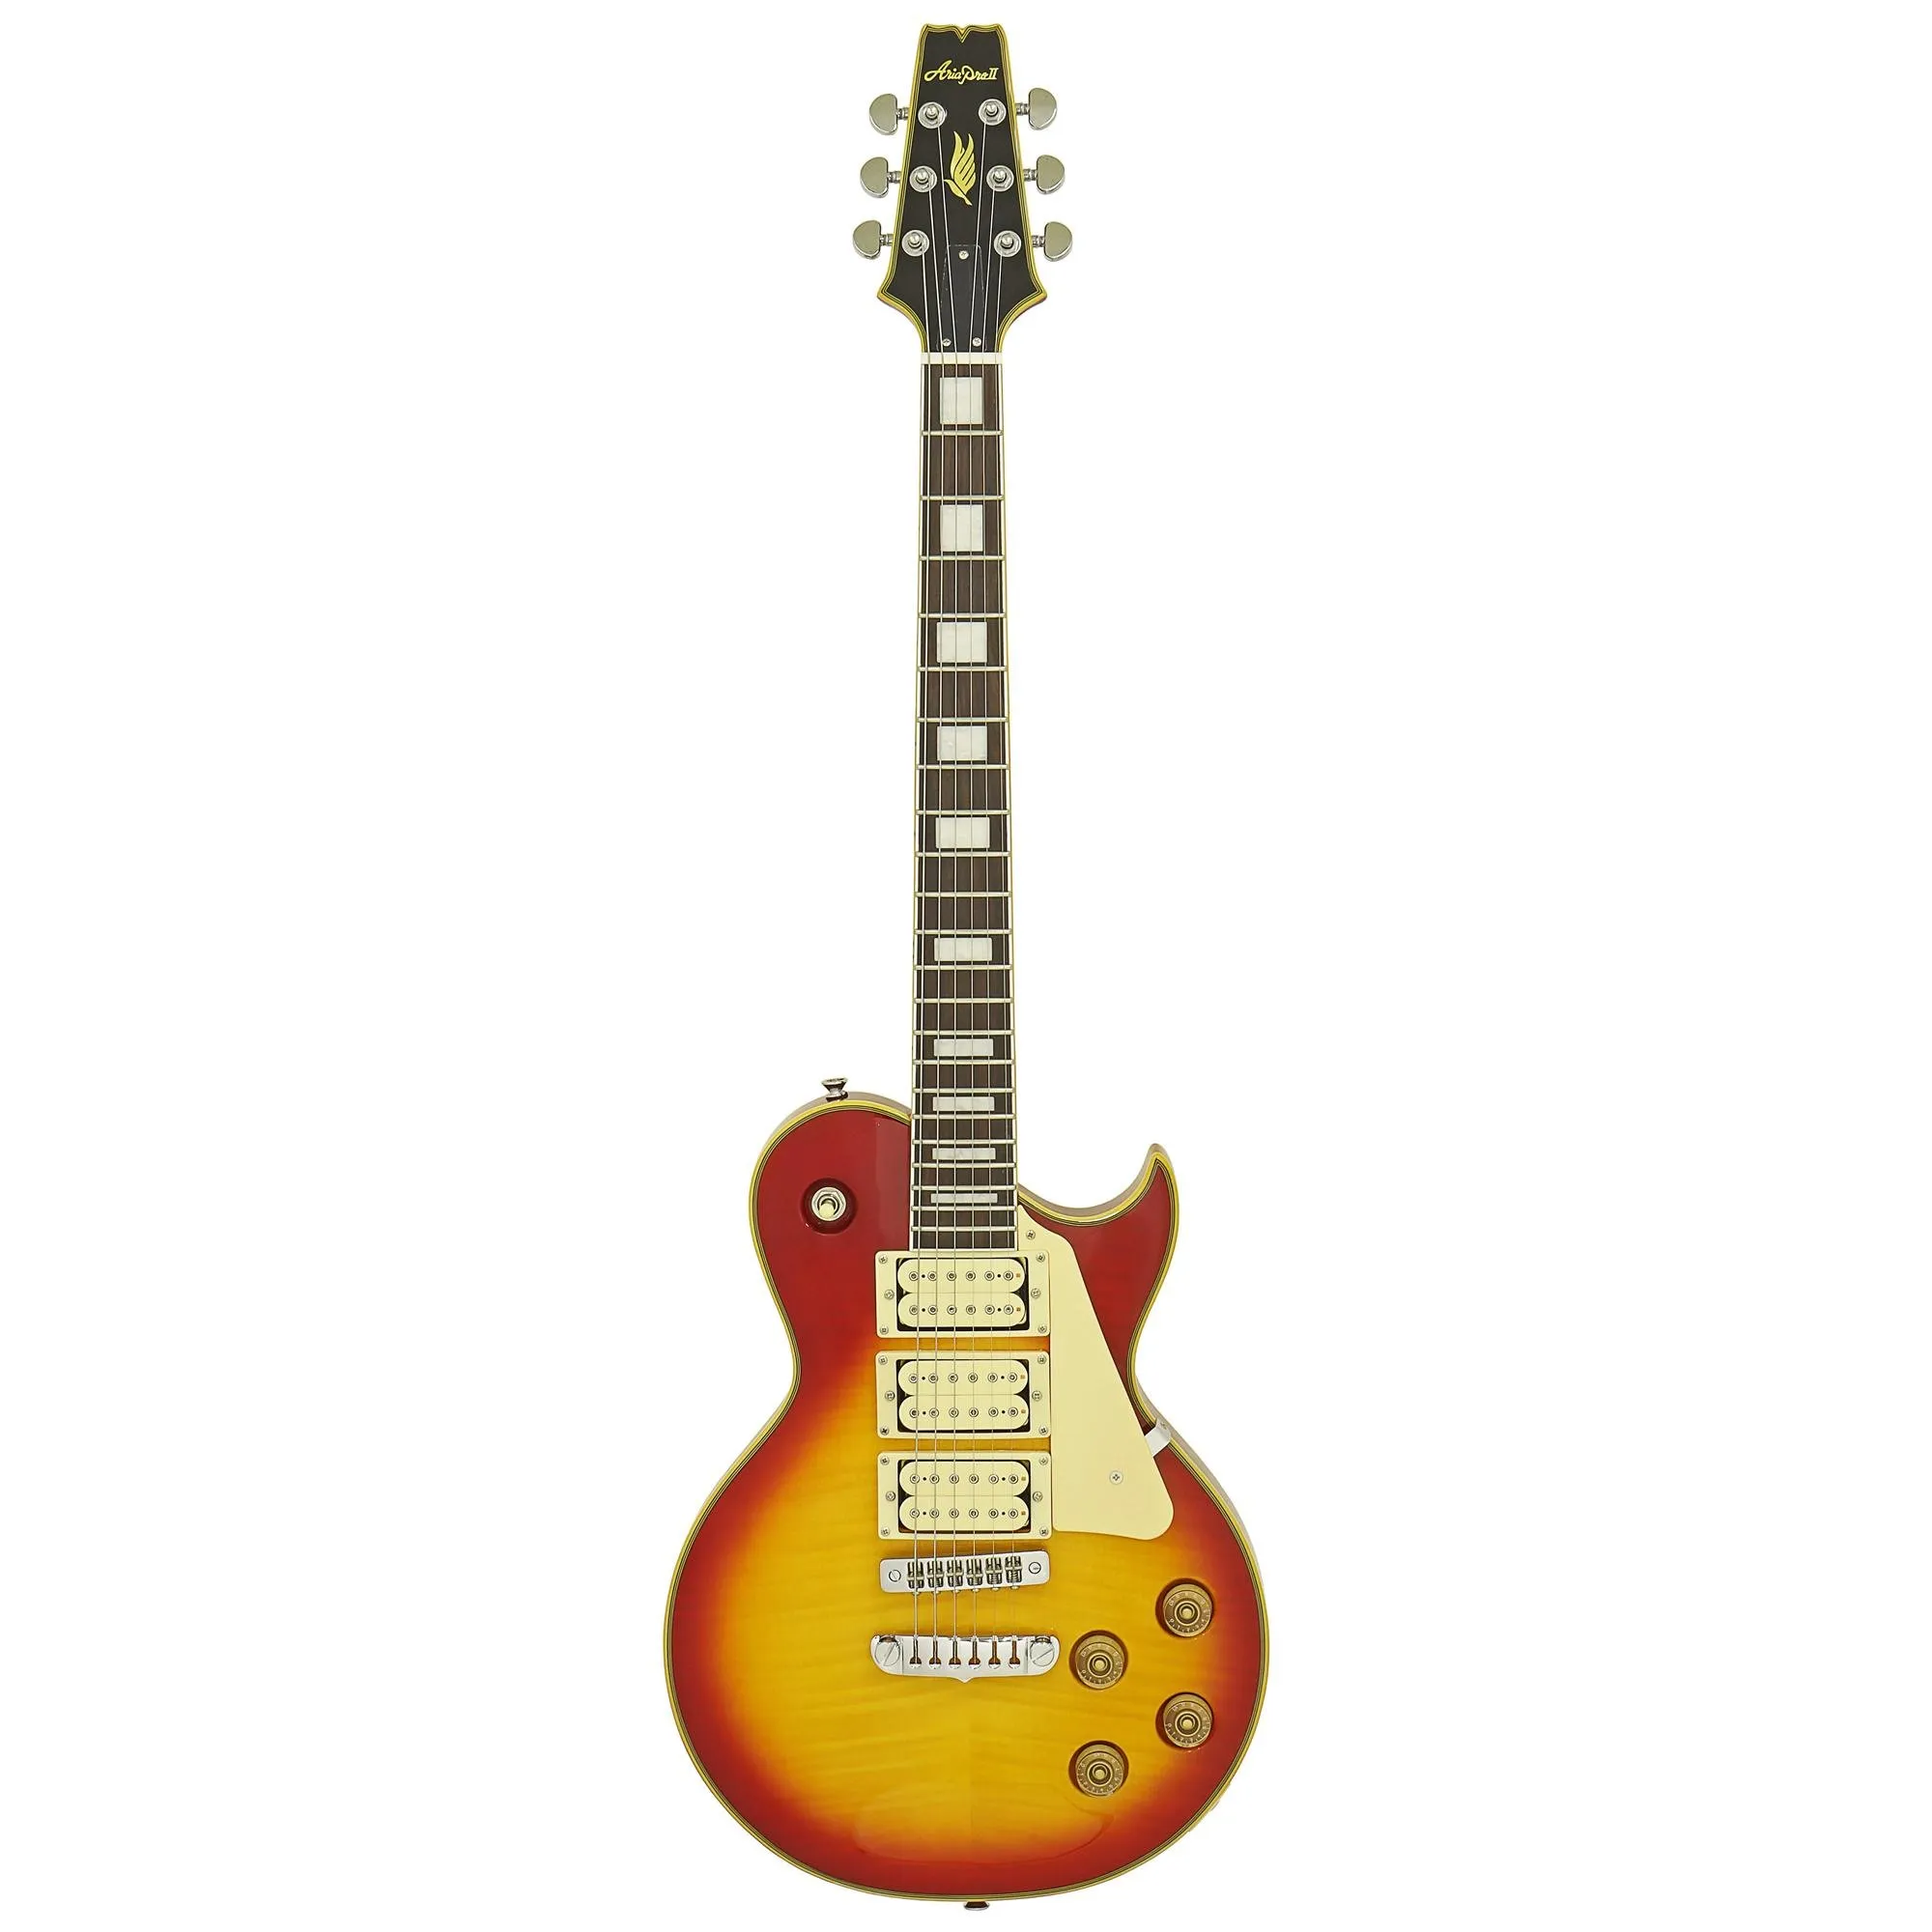 Guitarra Aria Pro II PE-590AF Aged Cherry Sunburst por 3.226,00 à vista no boleto/pix ou parcele em até 12x sem juros. Compre na loja Mundomax!